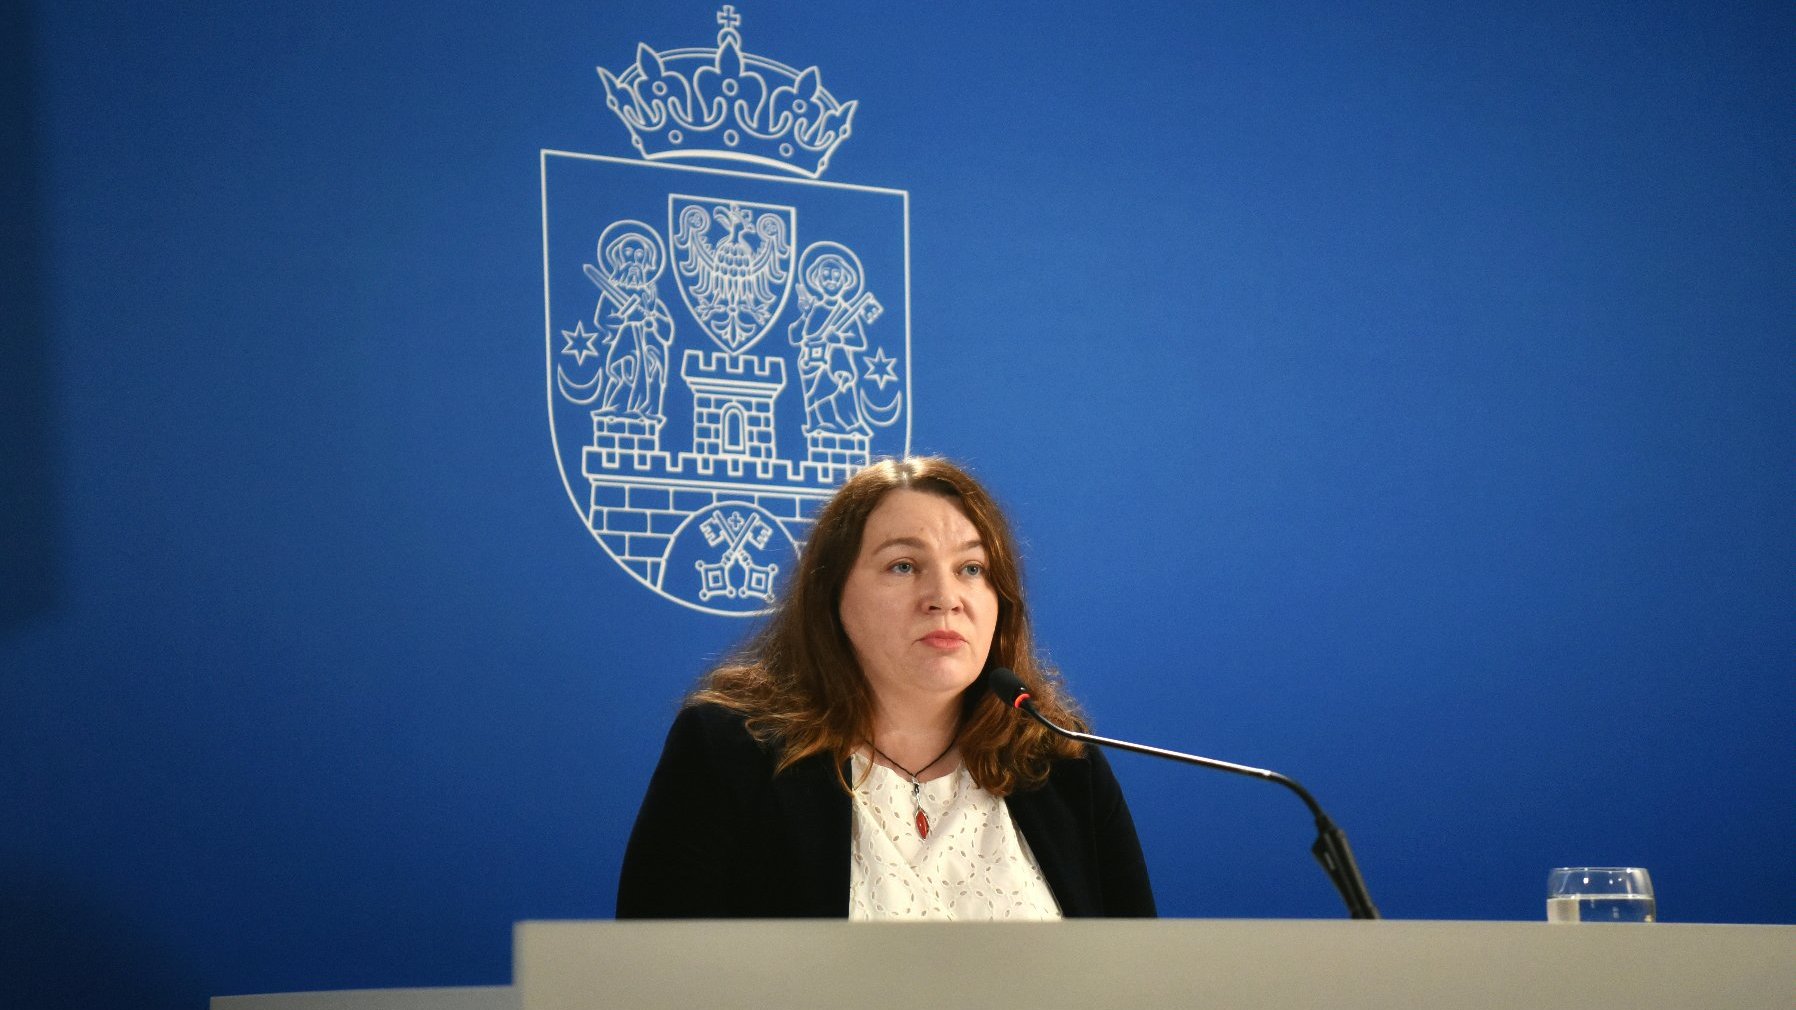 Na zdjęciu kobieta siedząca za stołem i mówiąca do mikrofonu, za nią niebieskie tło